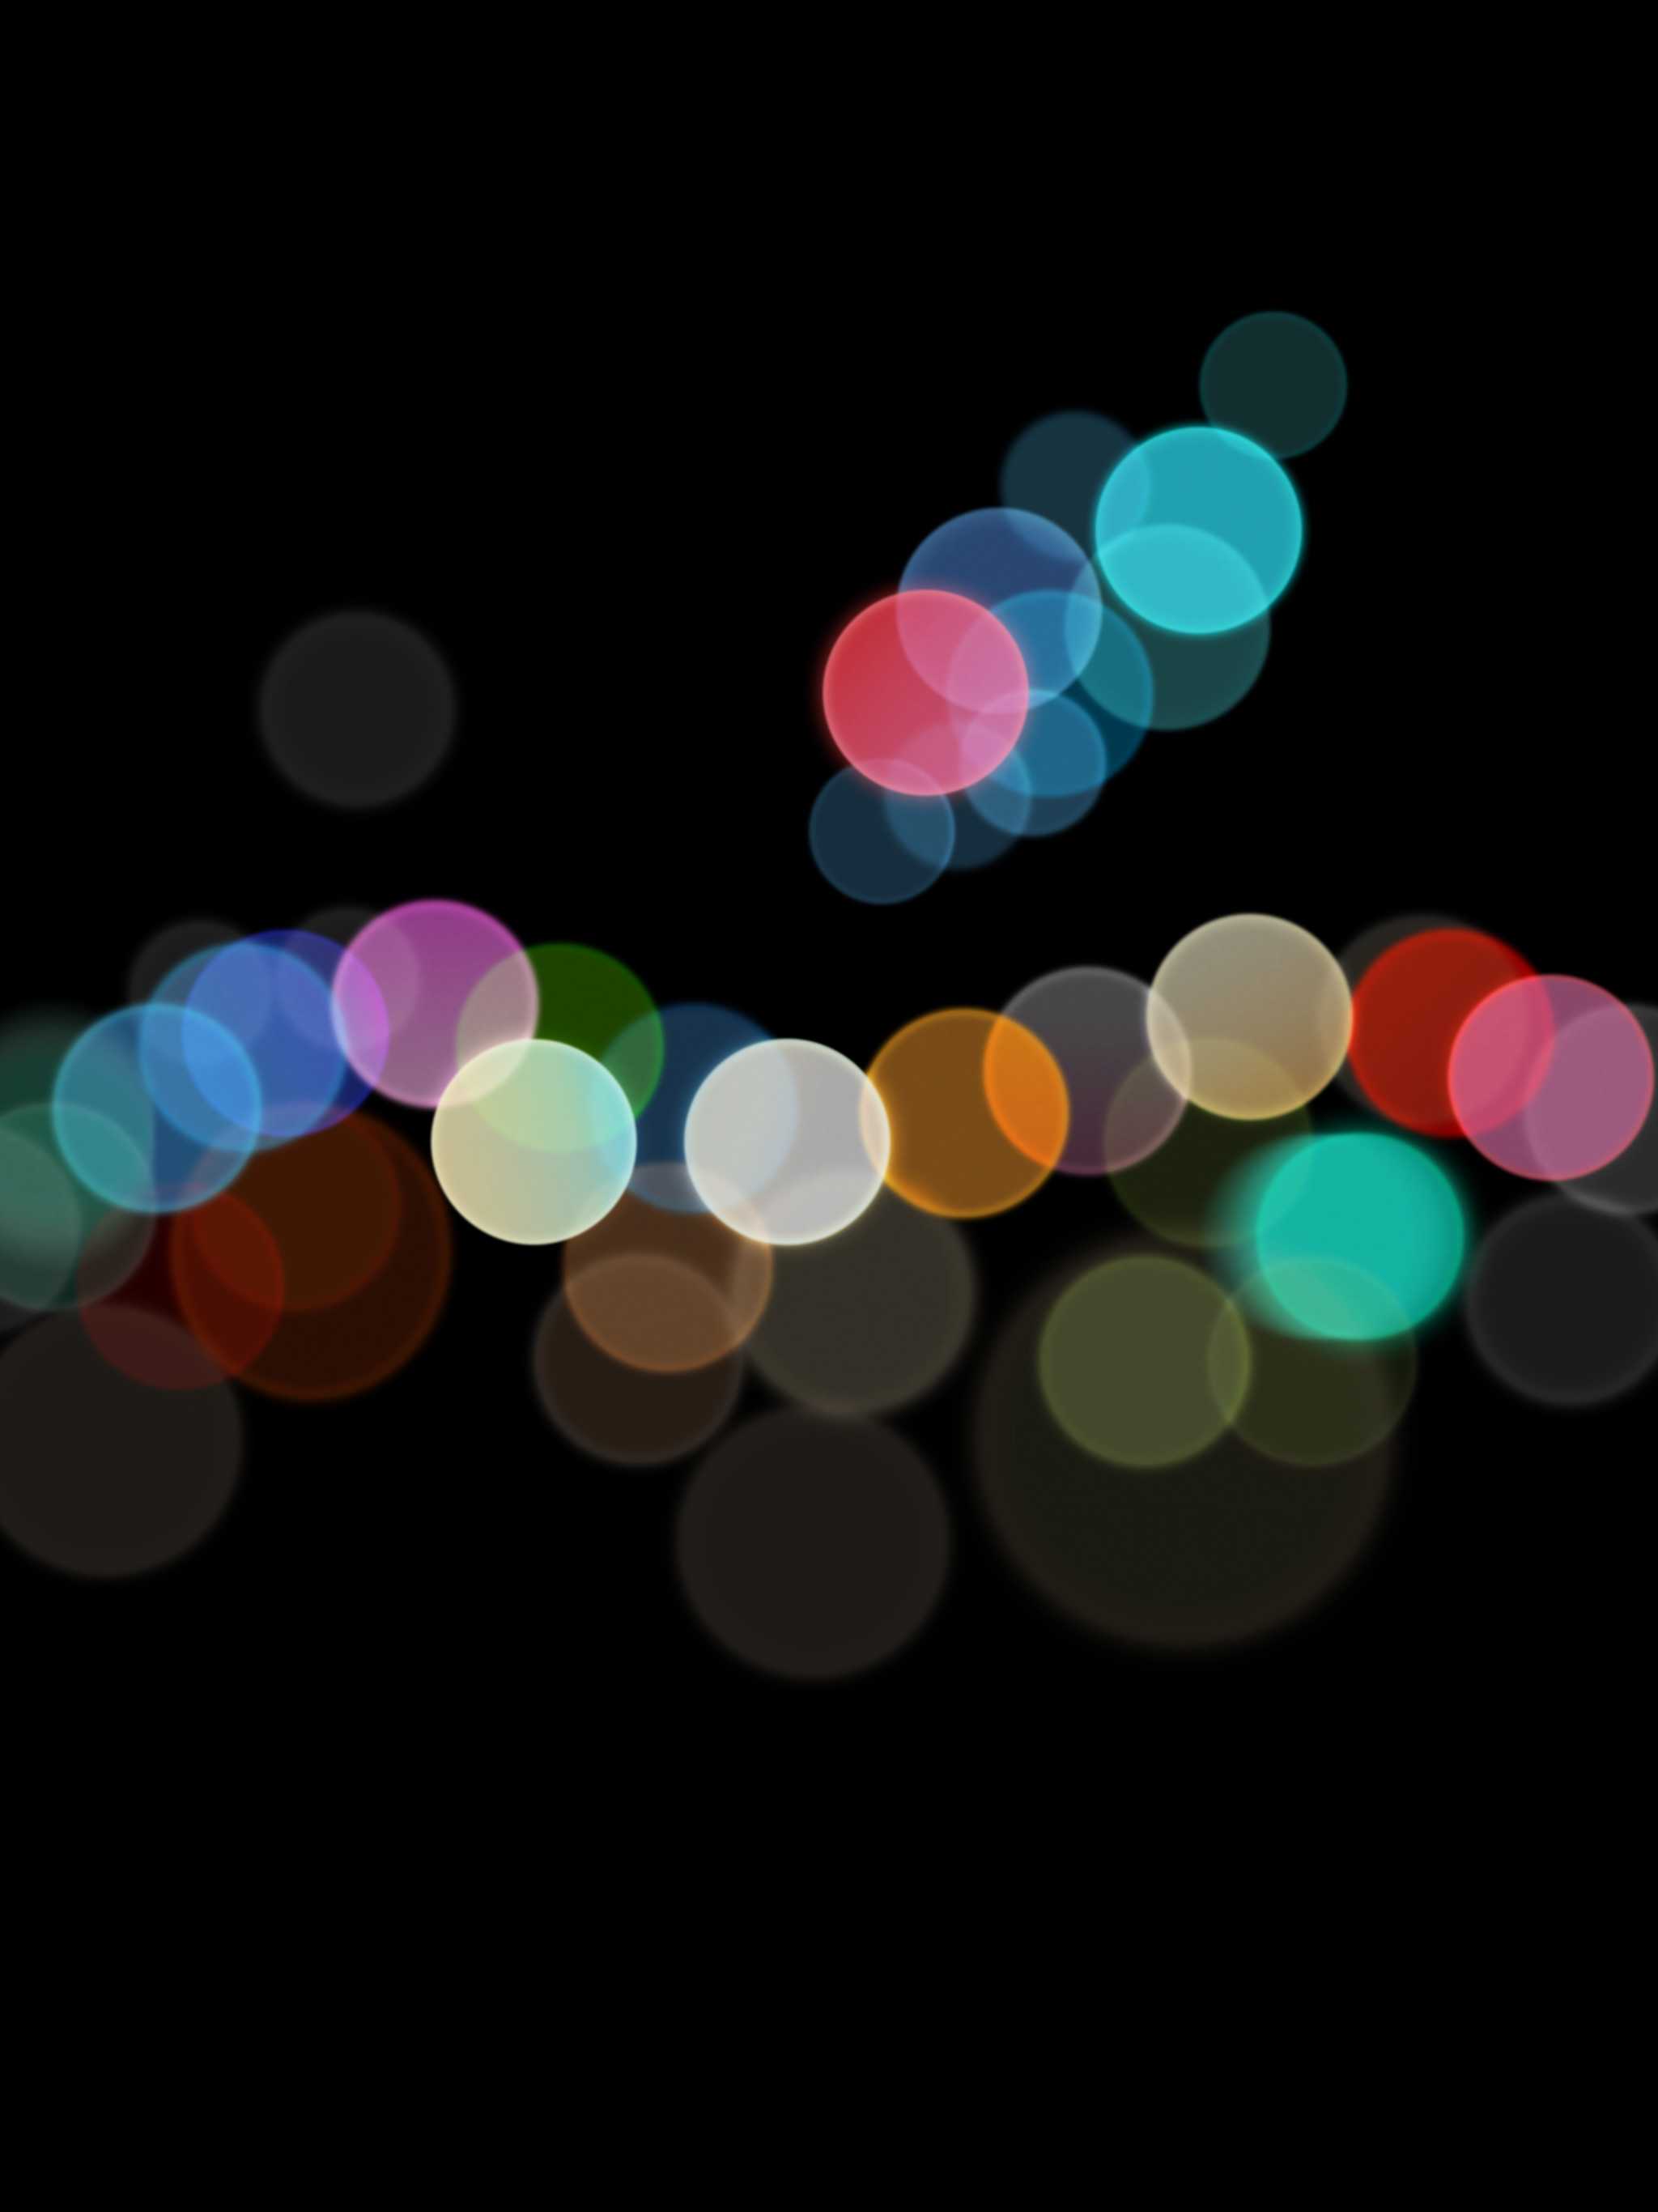 Iphone 7 Event Wallpaper Hintergrundbilder Als Download Macerkopf